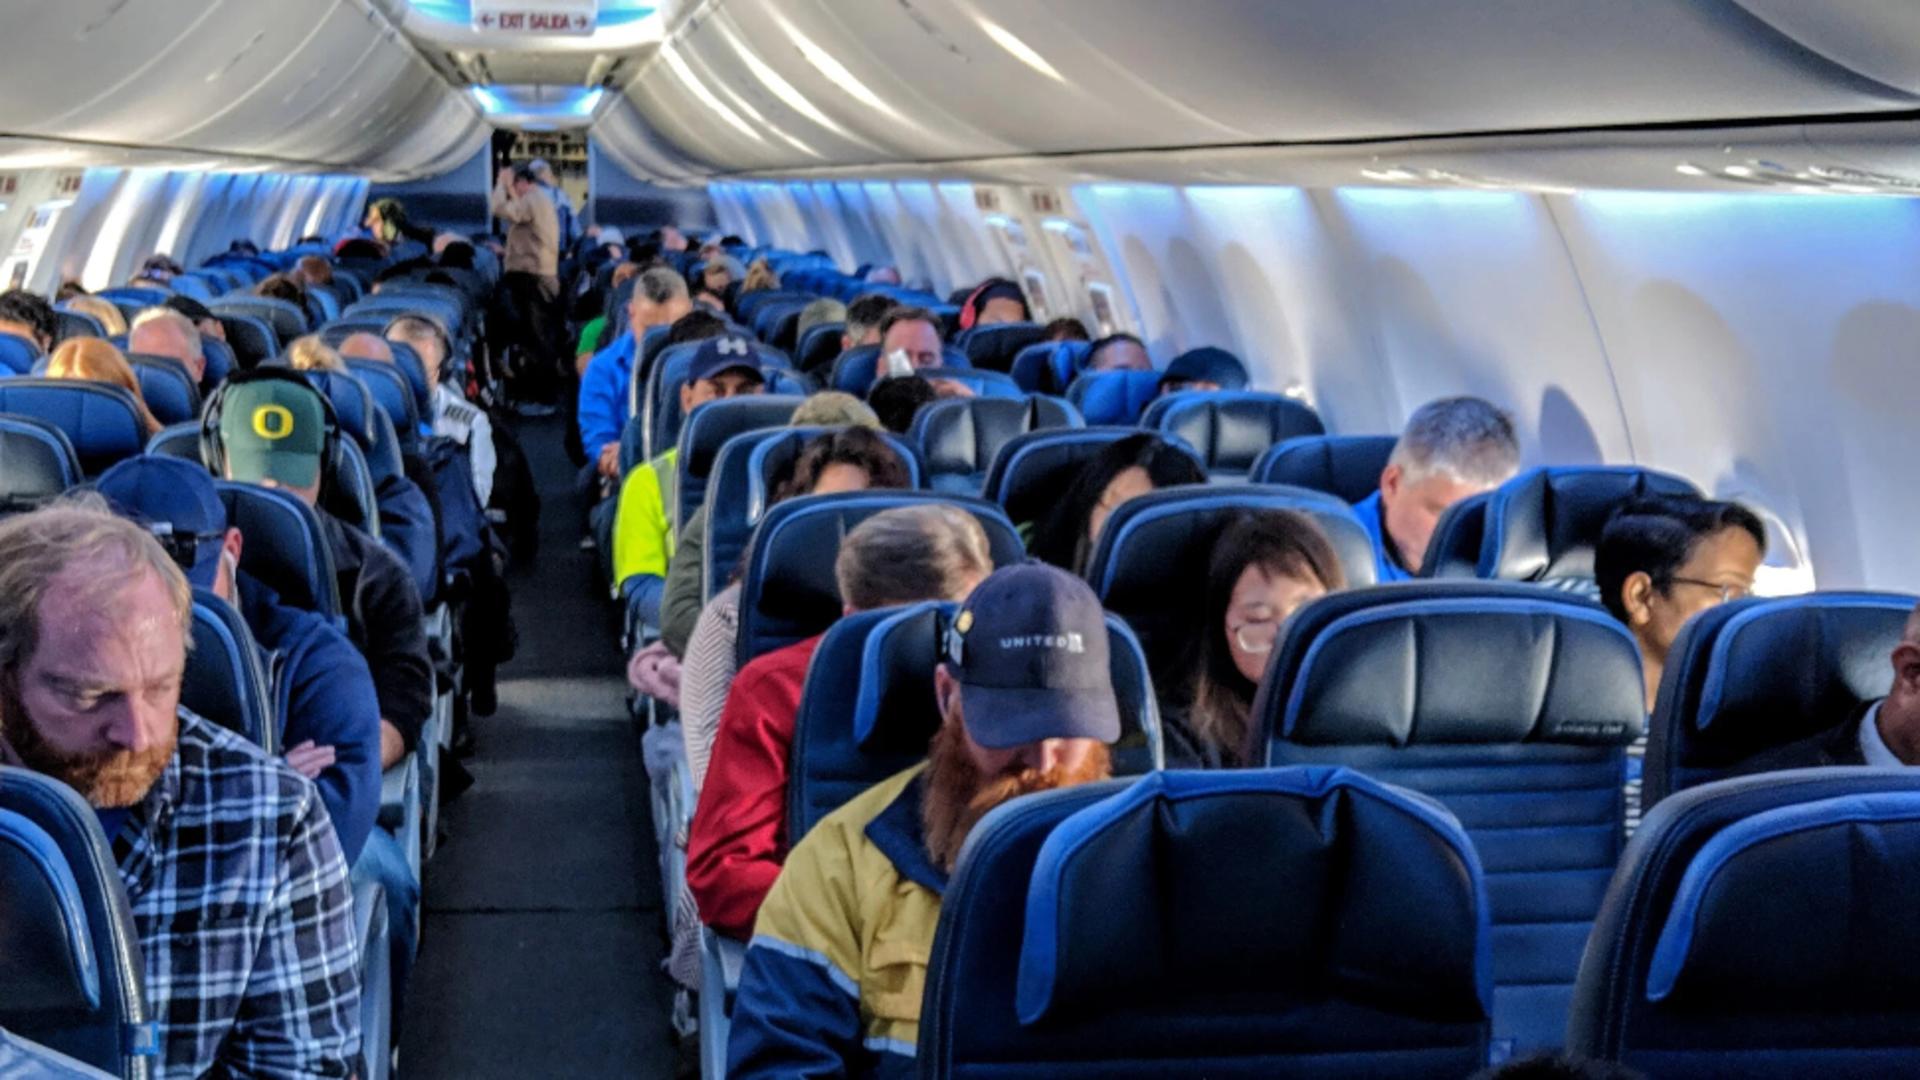 Acesta este cel mai murdar loc dintr-un avion. Contrar așteptărilor, nu este toaleta